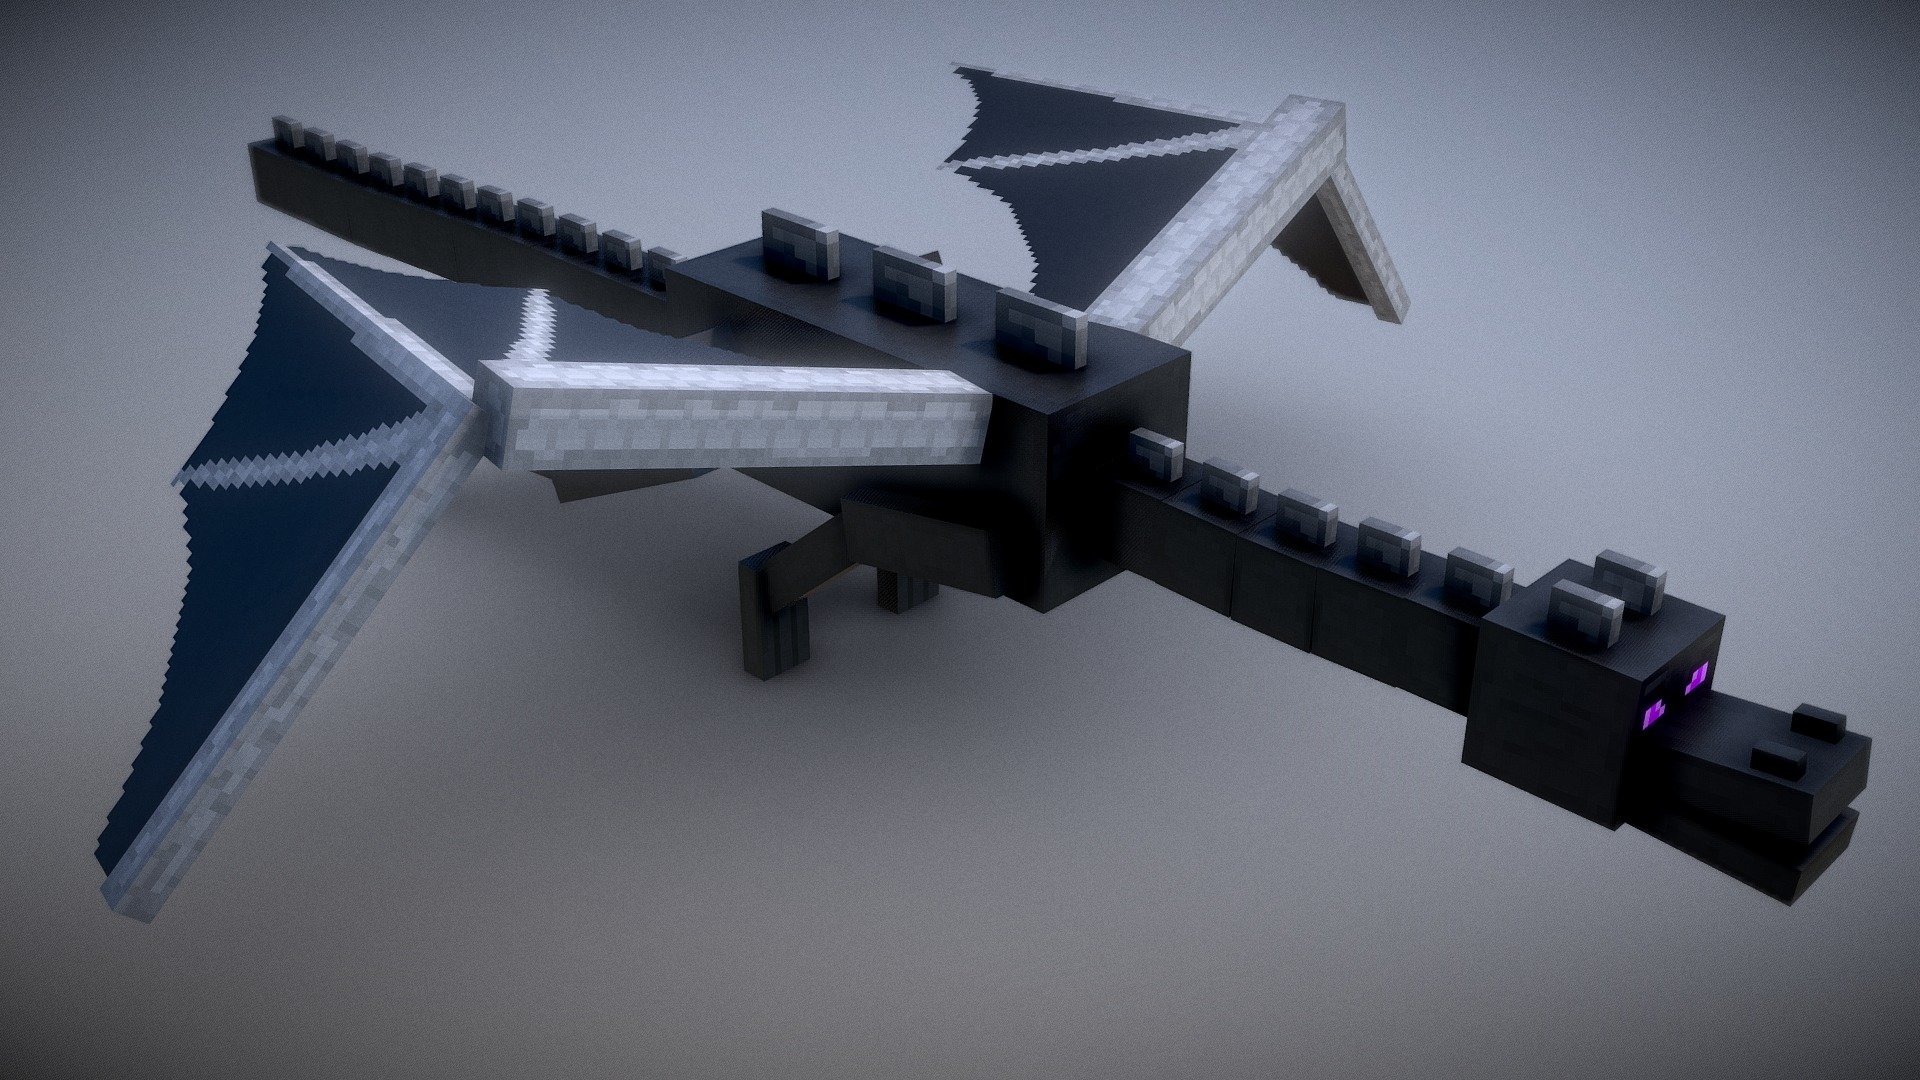 Minecraft's new Render Dragon engine will bring modern rendering